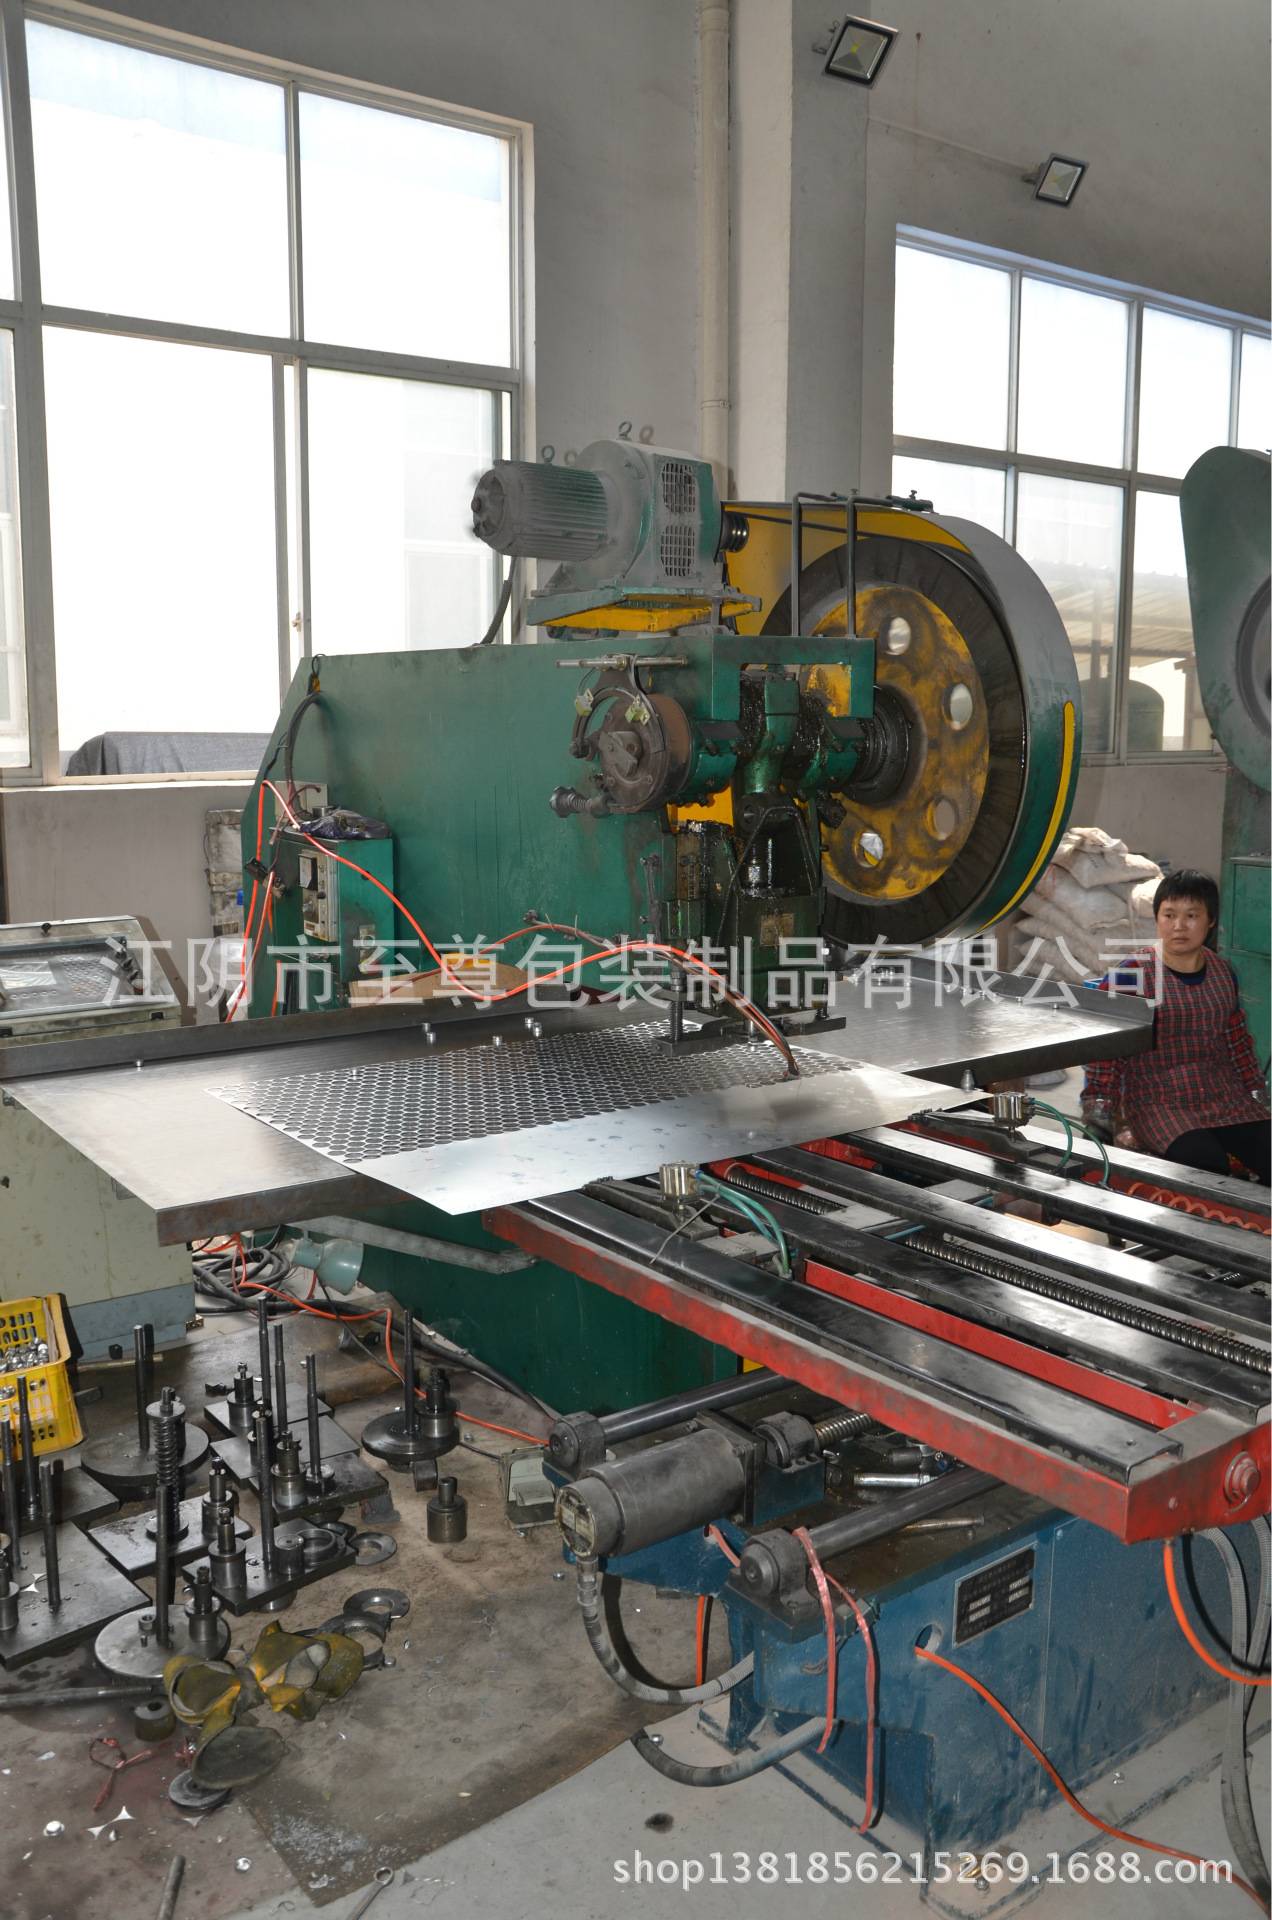 江陰至尊包裝制品有限公司,專門定做各種電化鋁蓋